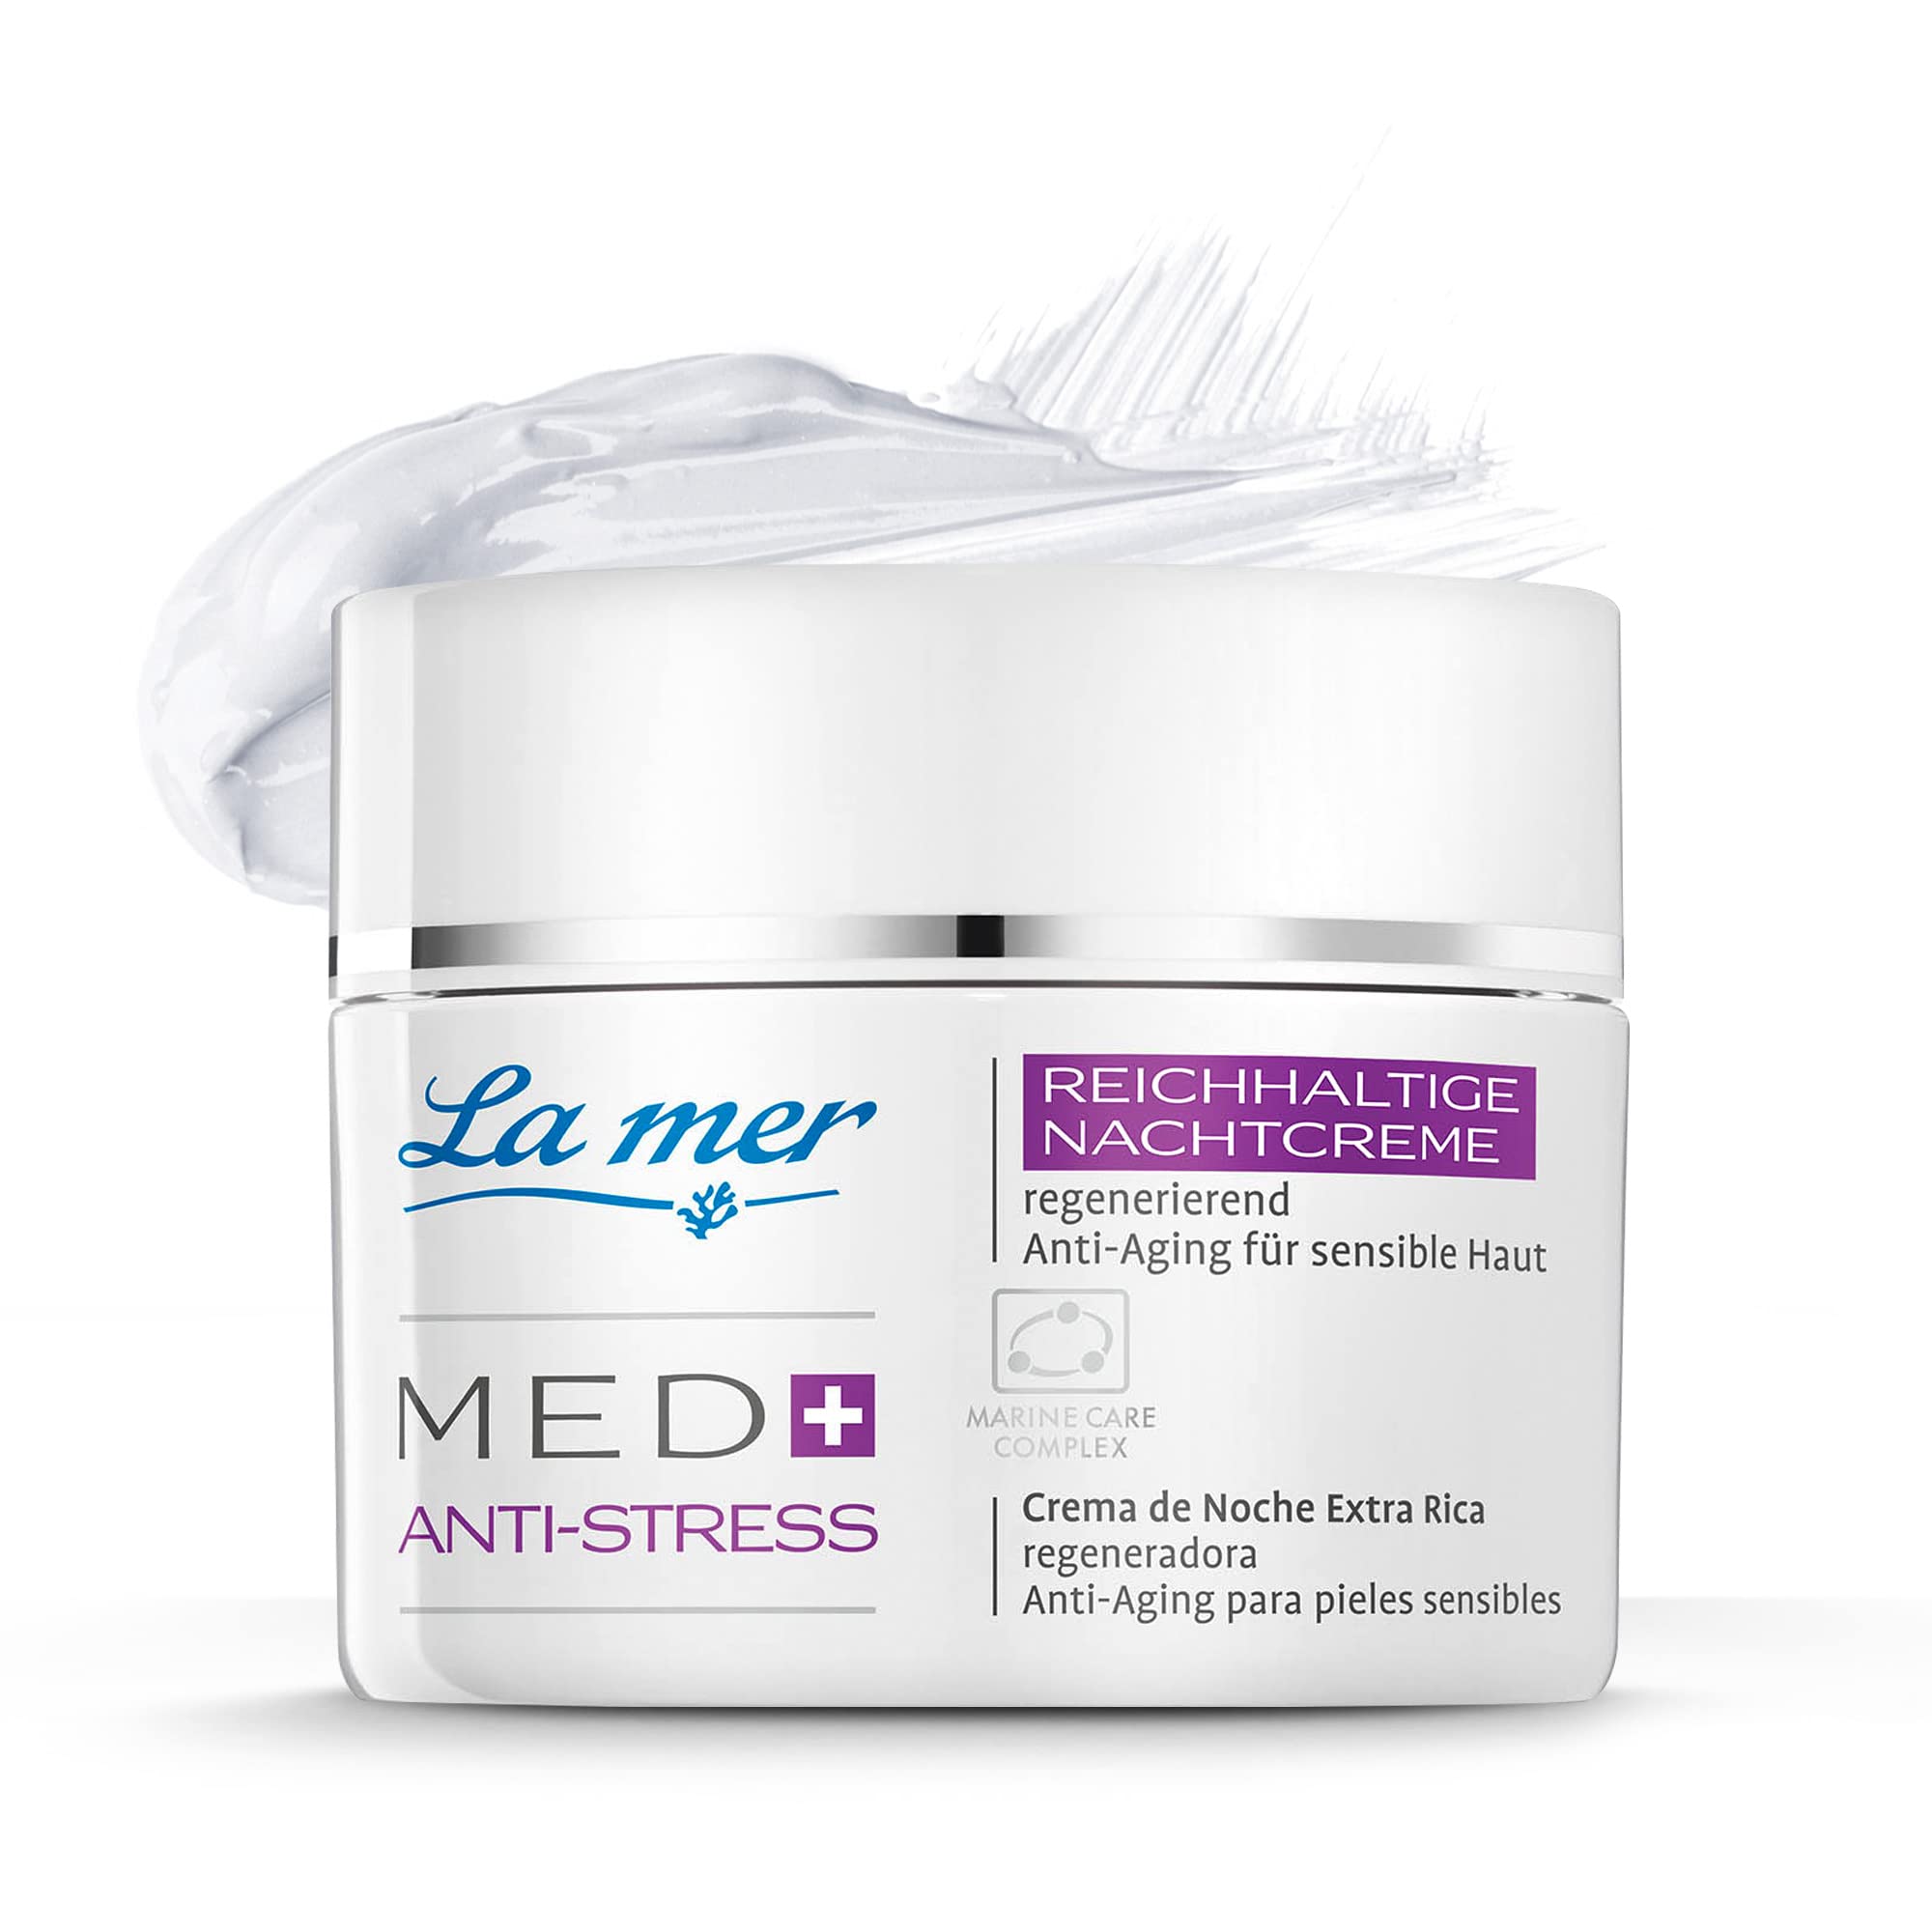 La mer MED+ Anti-Stress Reichhaltige Nachtcreme - Gesichtscreme mit Vitamin A und E & Sheabutter - Schützt gegen schädliche Umwelteinflüsse - Für gestresste und irritierte Haut - 50 ml